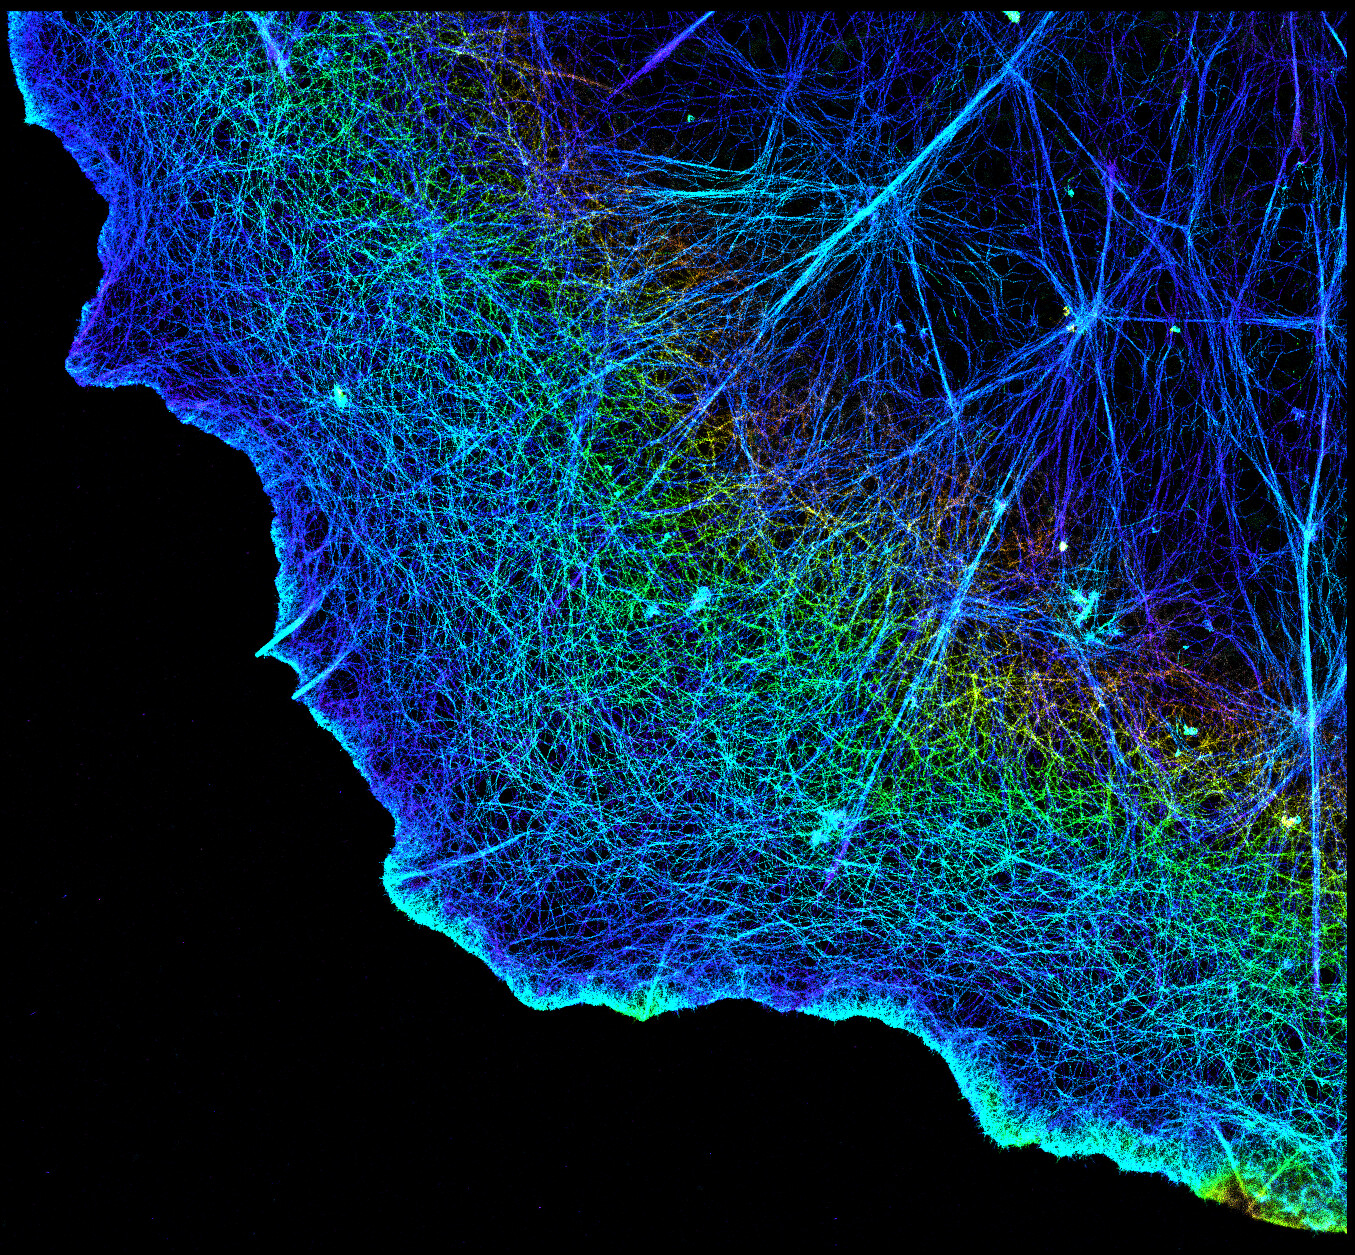 Questa immagine dei filamenti di actina in una cellula è stata scattata utilizzando un tipo di microscopia a super risoluzione